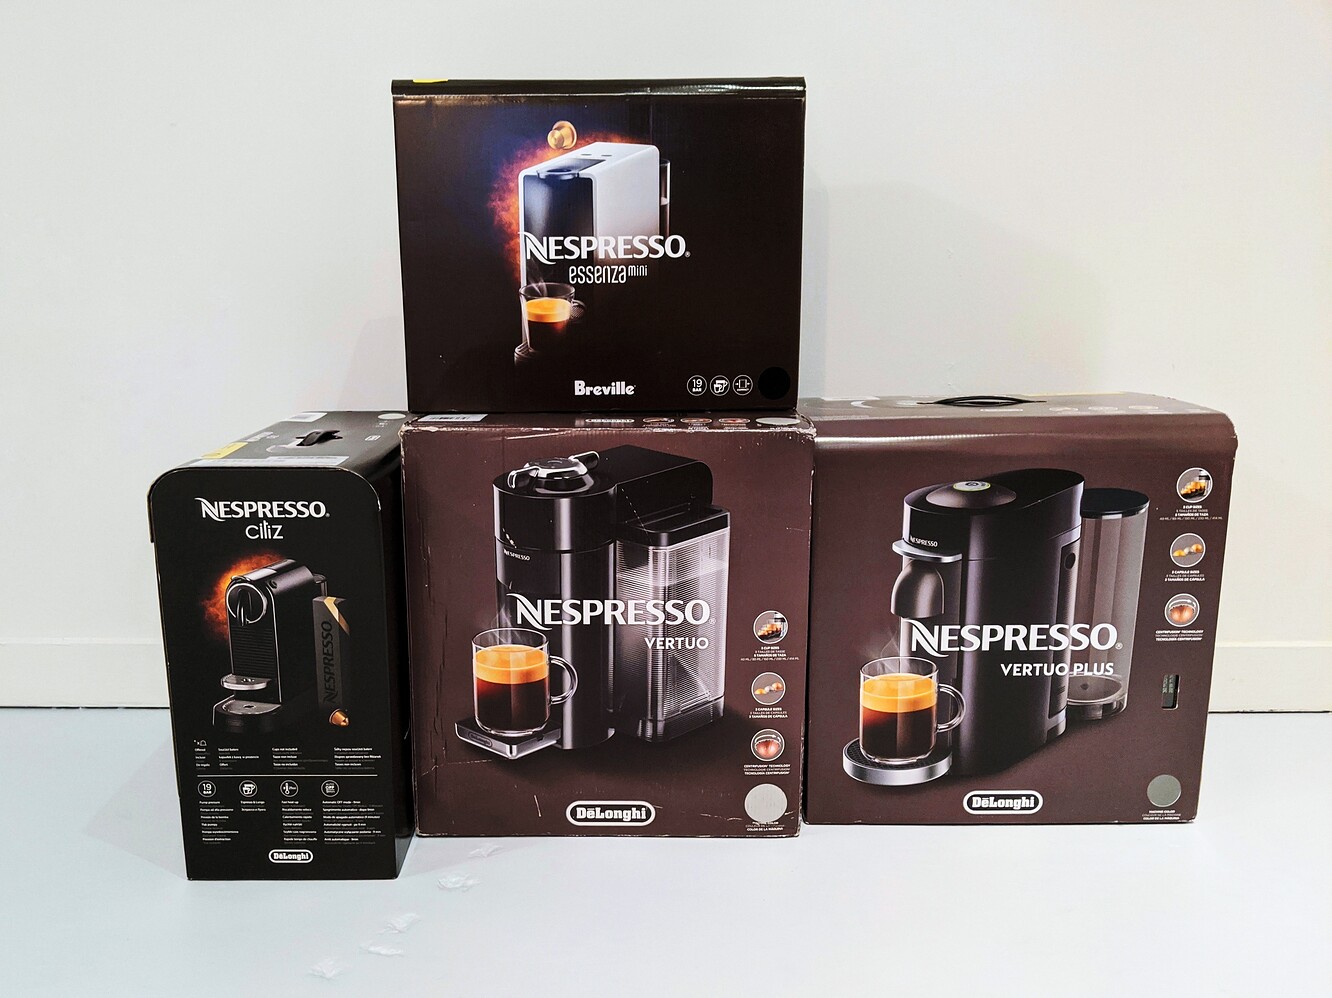 Nespresso Vertuo vs Original What's Your Favorite